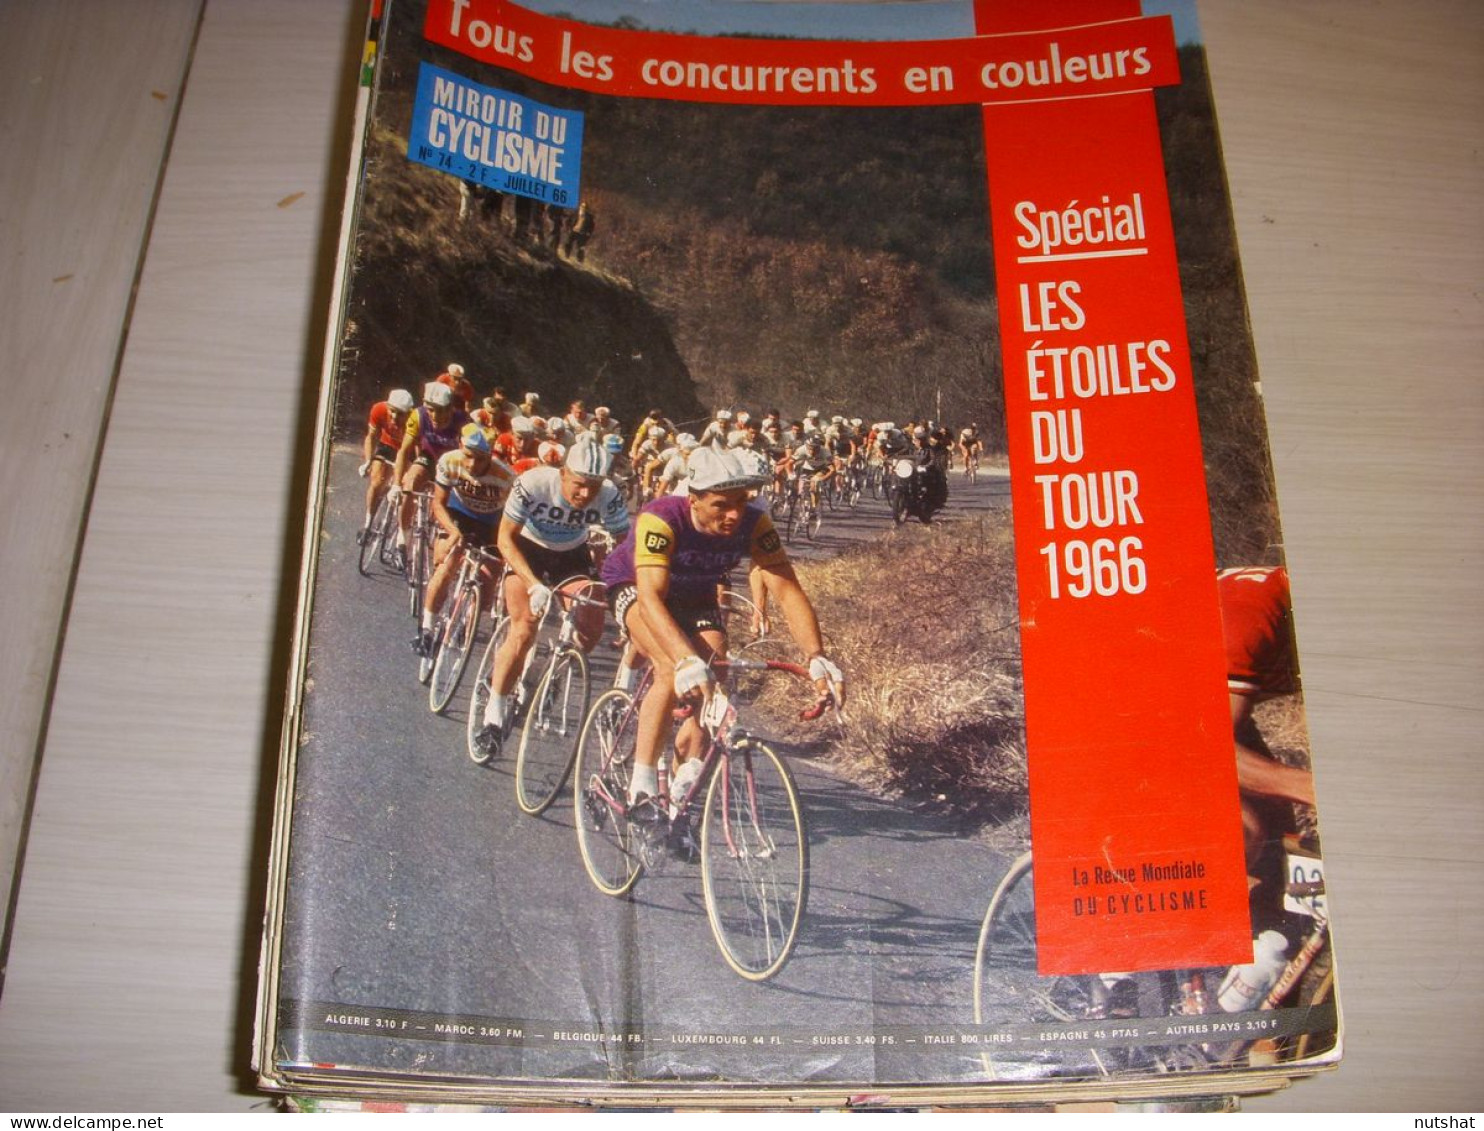 MIROIR Du CYCLISME 074 07.1966 TdF TOUS LES CONCURRENTS En COULEURS - Sport